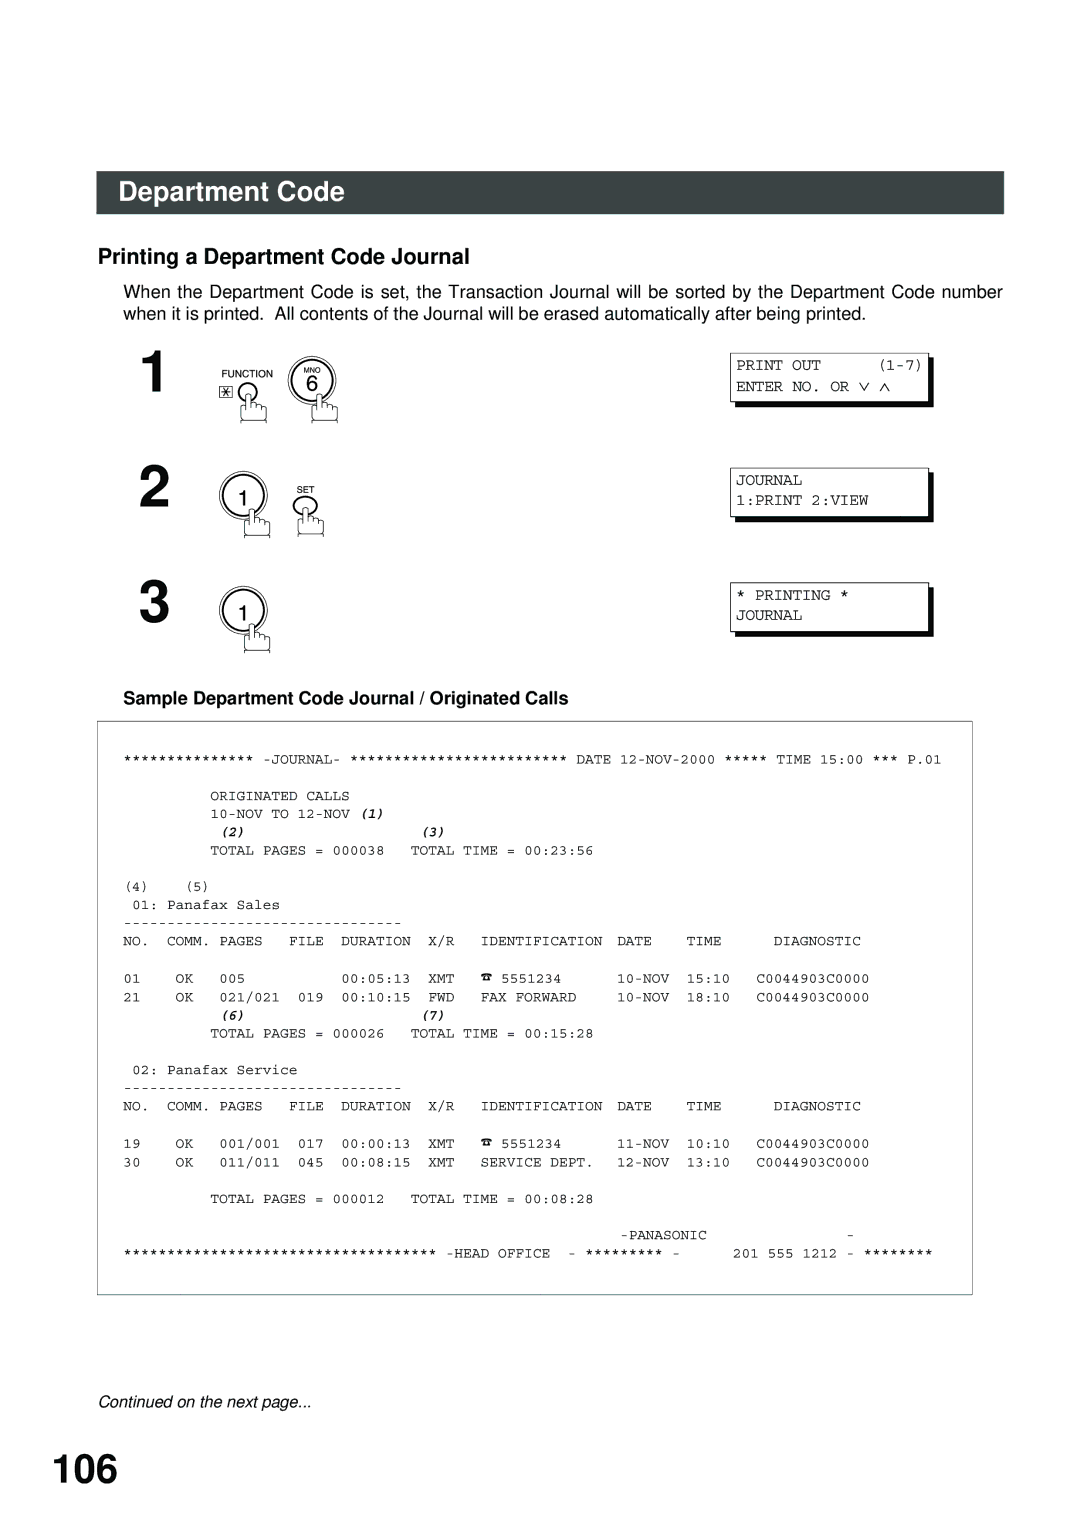 Panasonic SM08B, XN200, UC200 106, Printing a Department Code Journal, Sample Department Code Journal / Originated Calls 